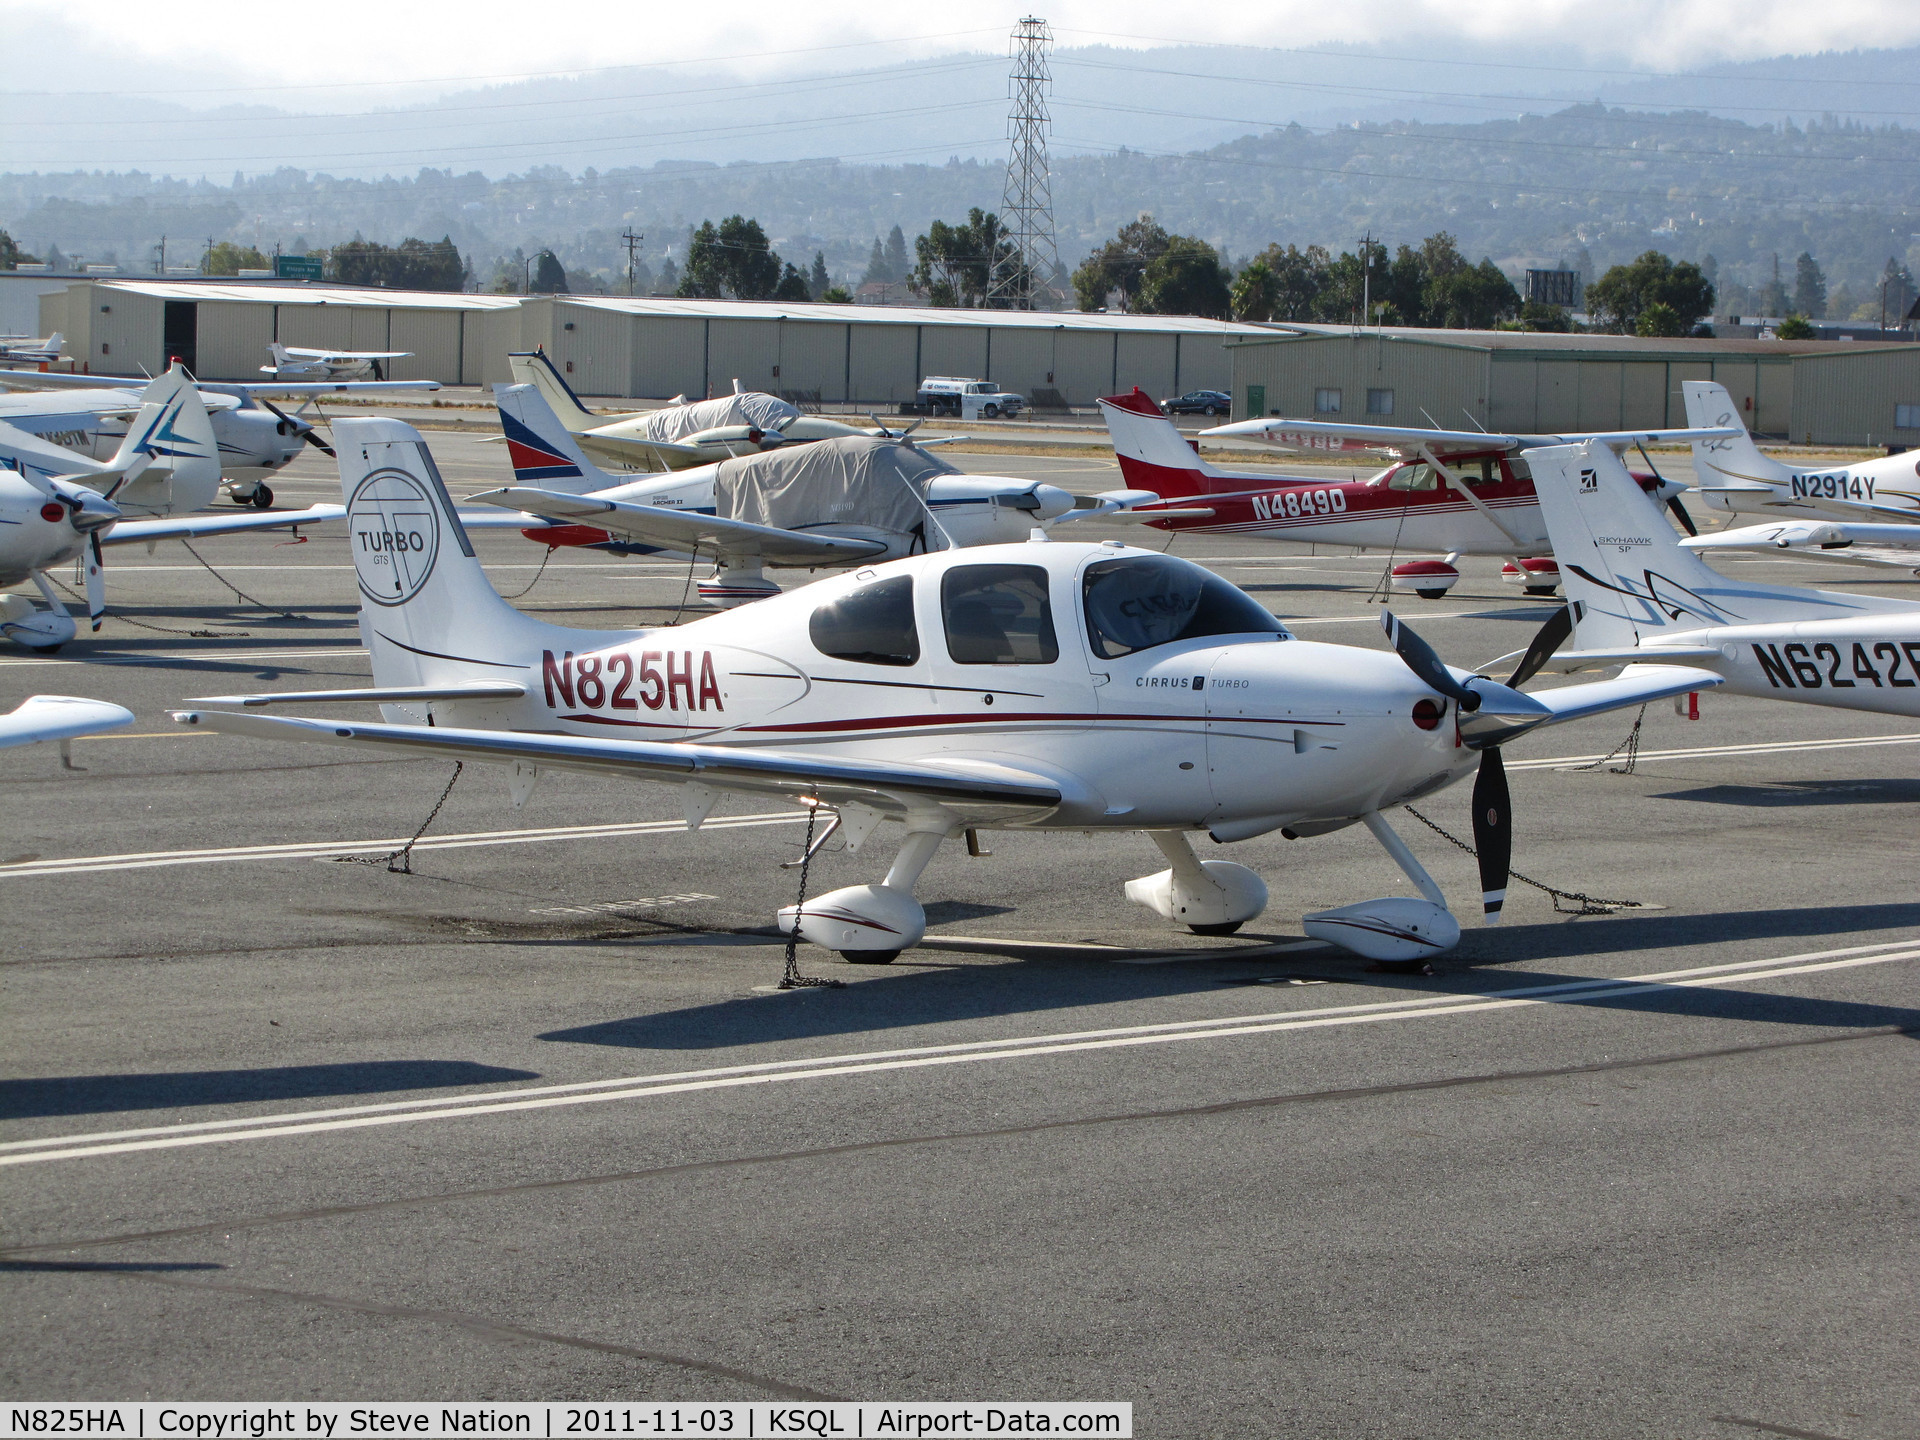 N825HA, 2009 Cirrus SR22 C/N 3561, Locally-based Harbinger Aviation LLC 2009 Cirrus design SR22 @ San Carlos, CA